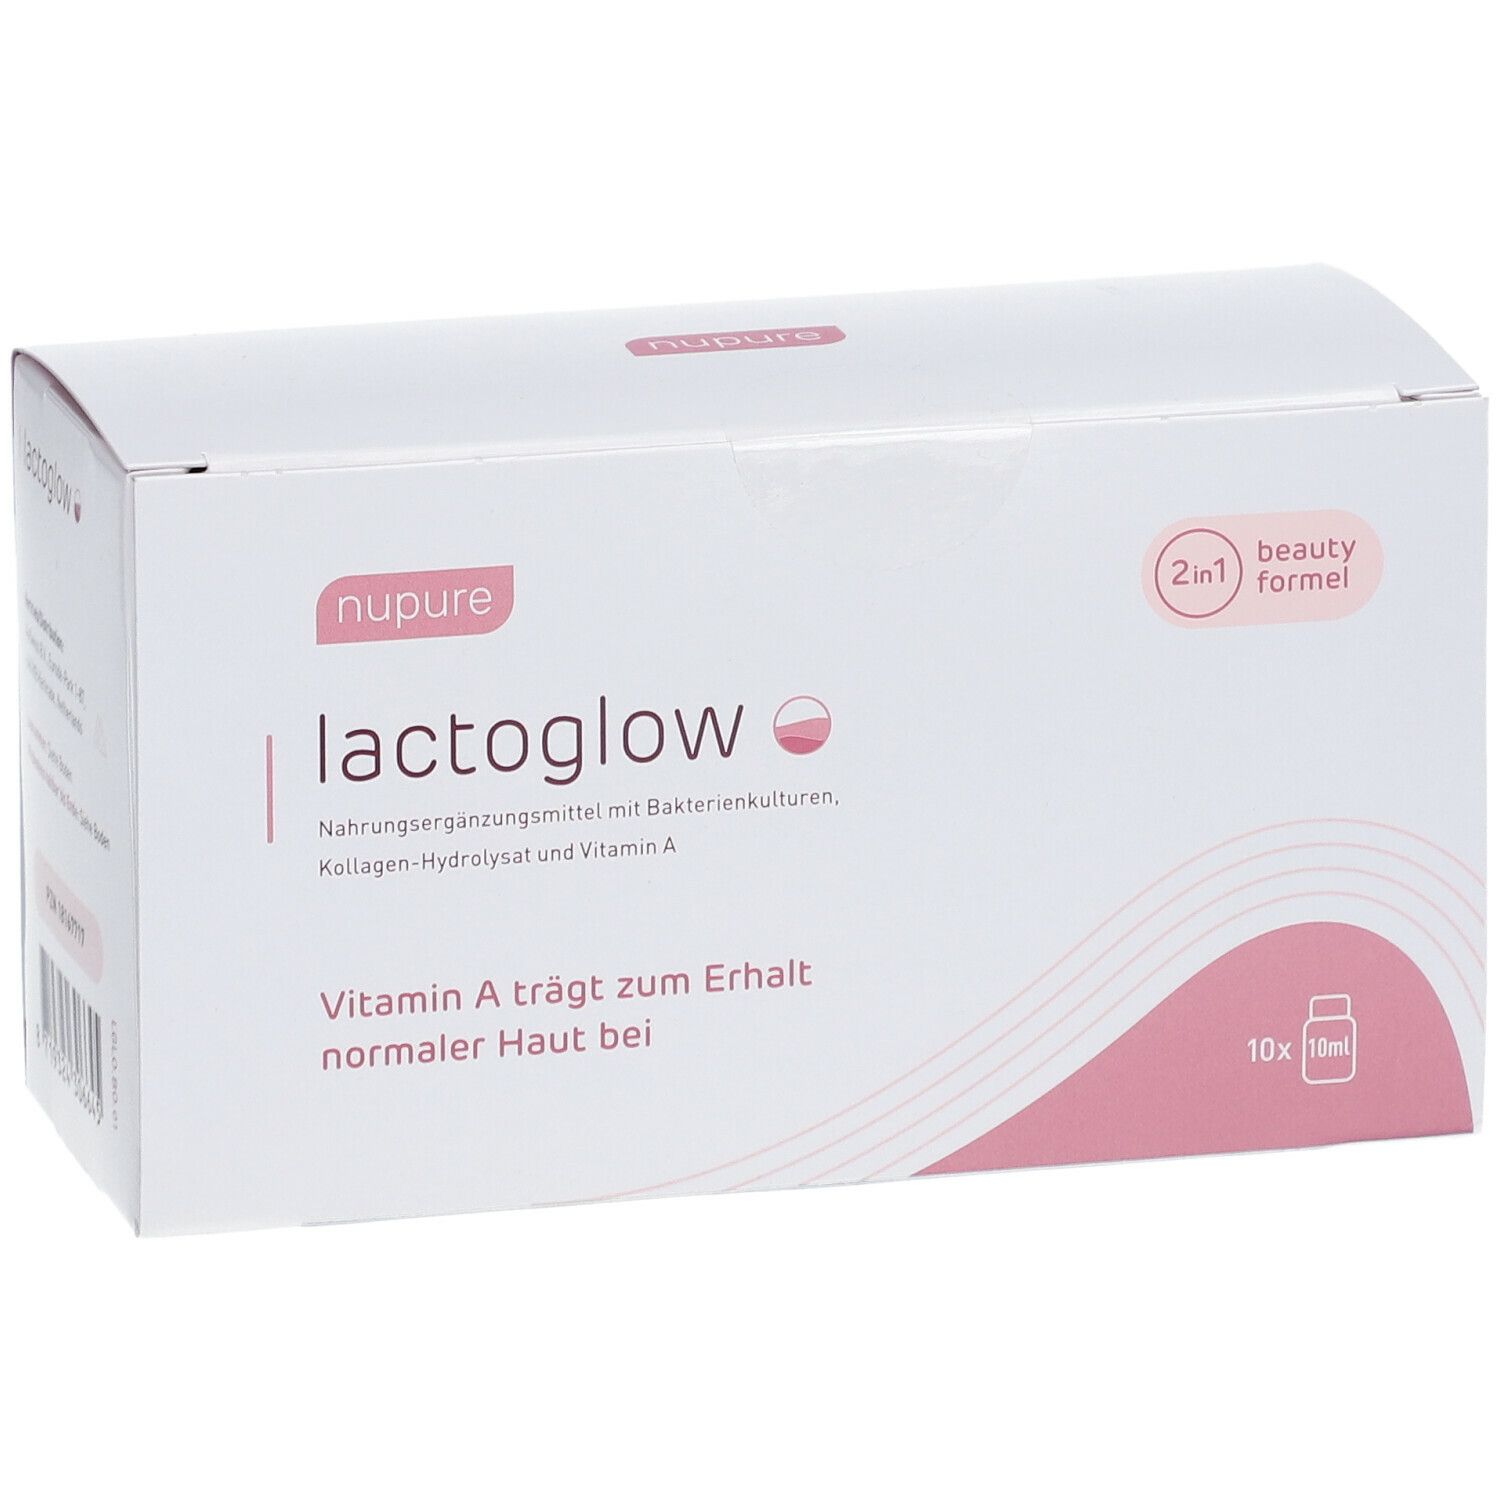 Nupure lactoglow - Kollagen und Milchsäurebakterien für strahlende Haut